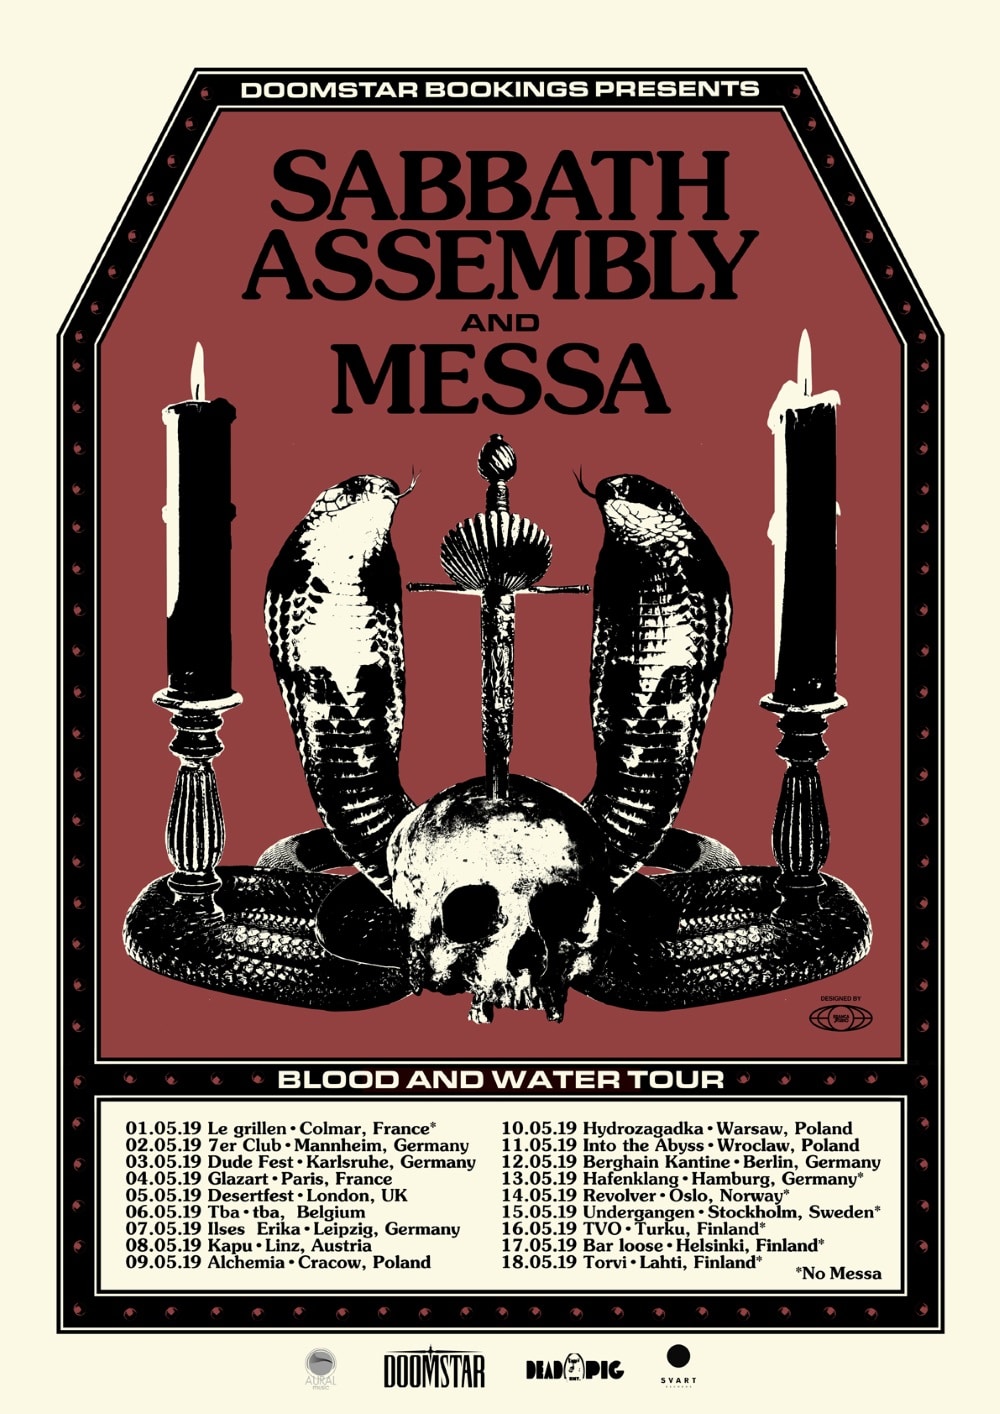 MESSA tour flyer